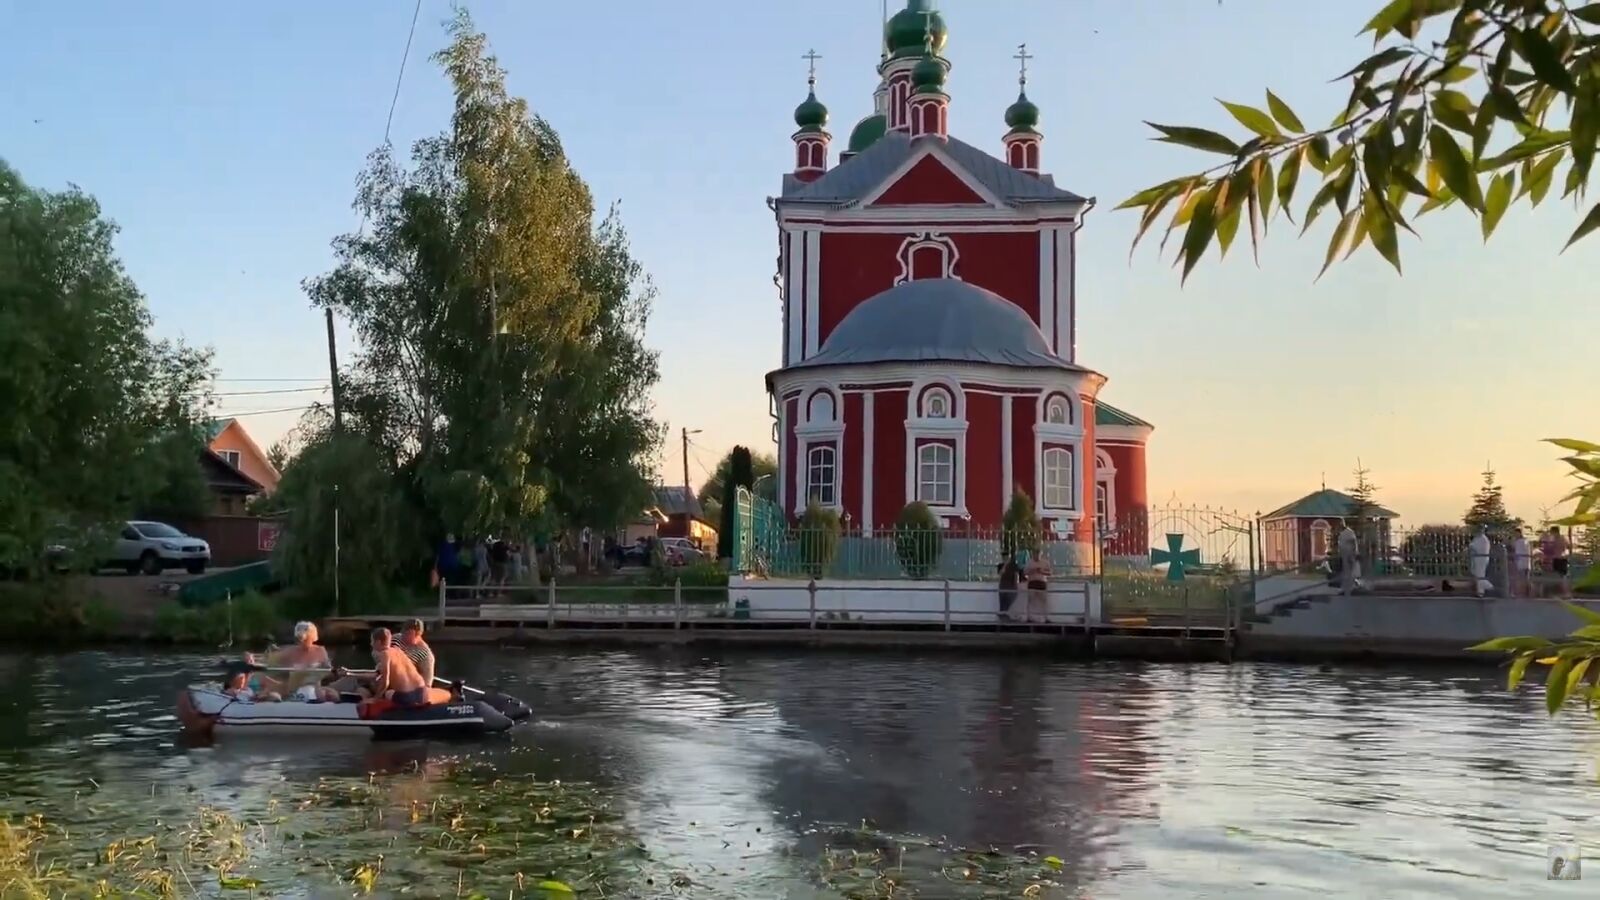 Переславль-Залесский городок с уникальной природой